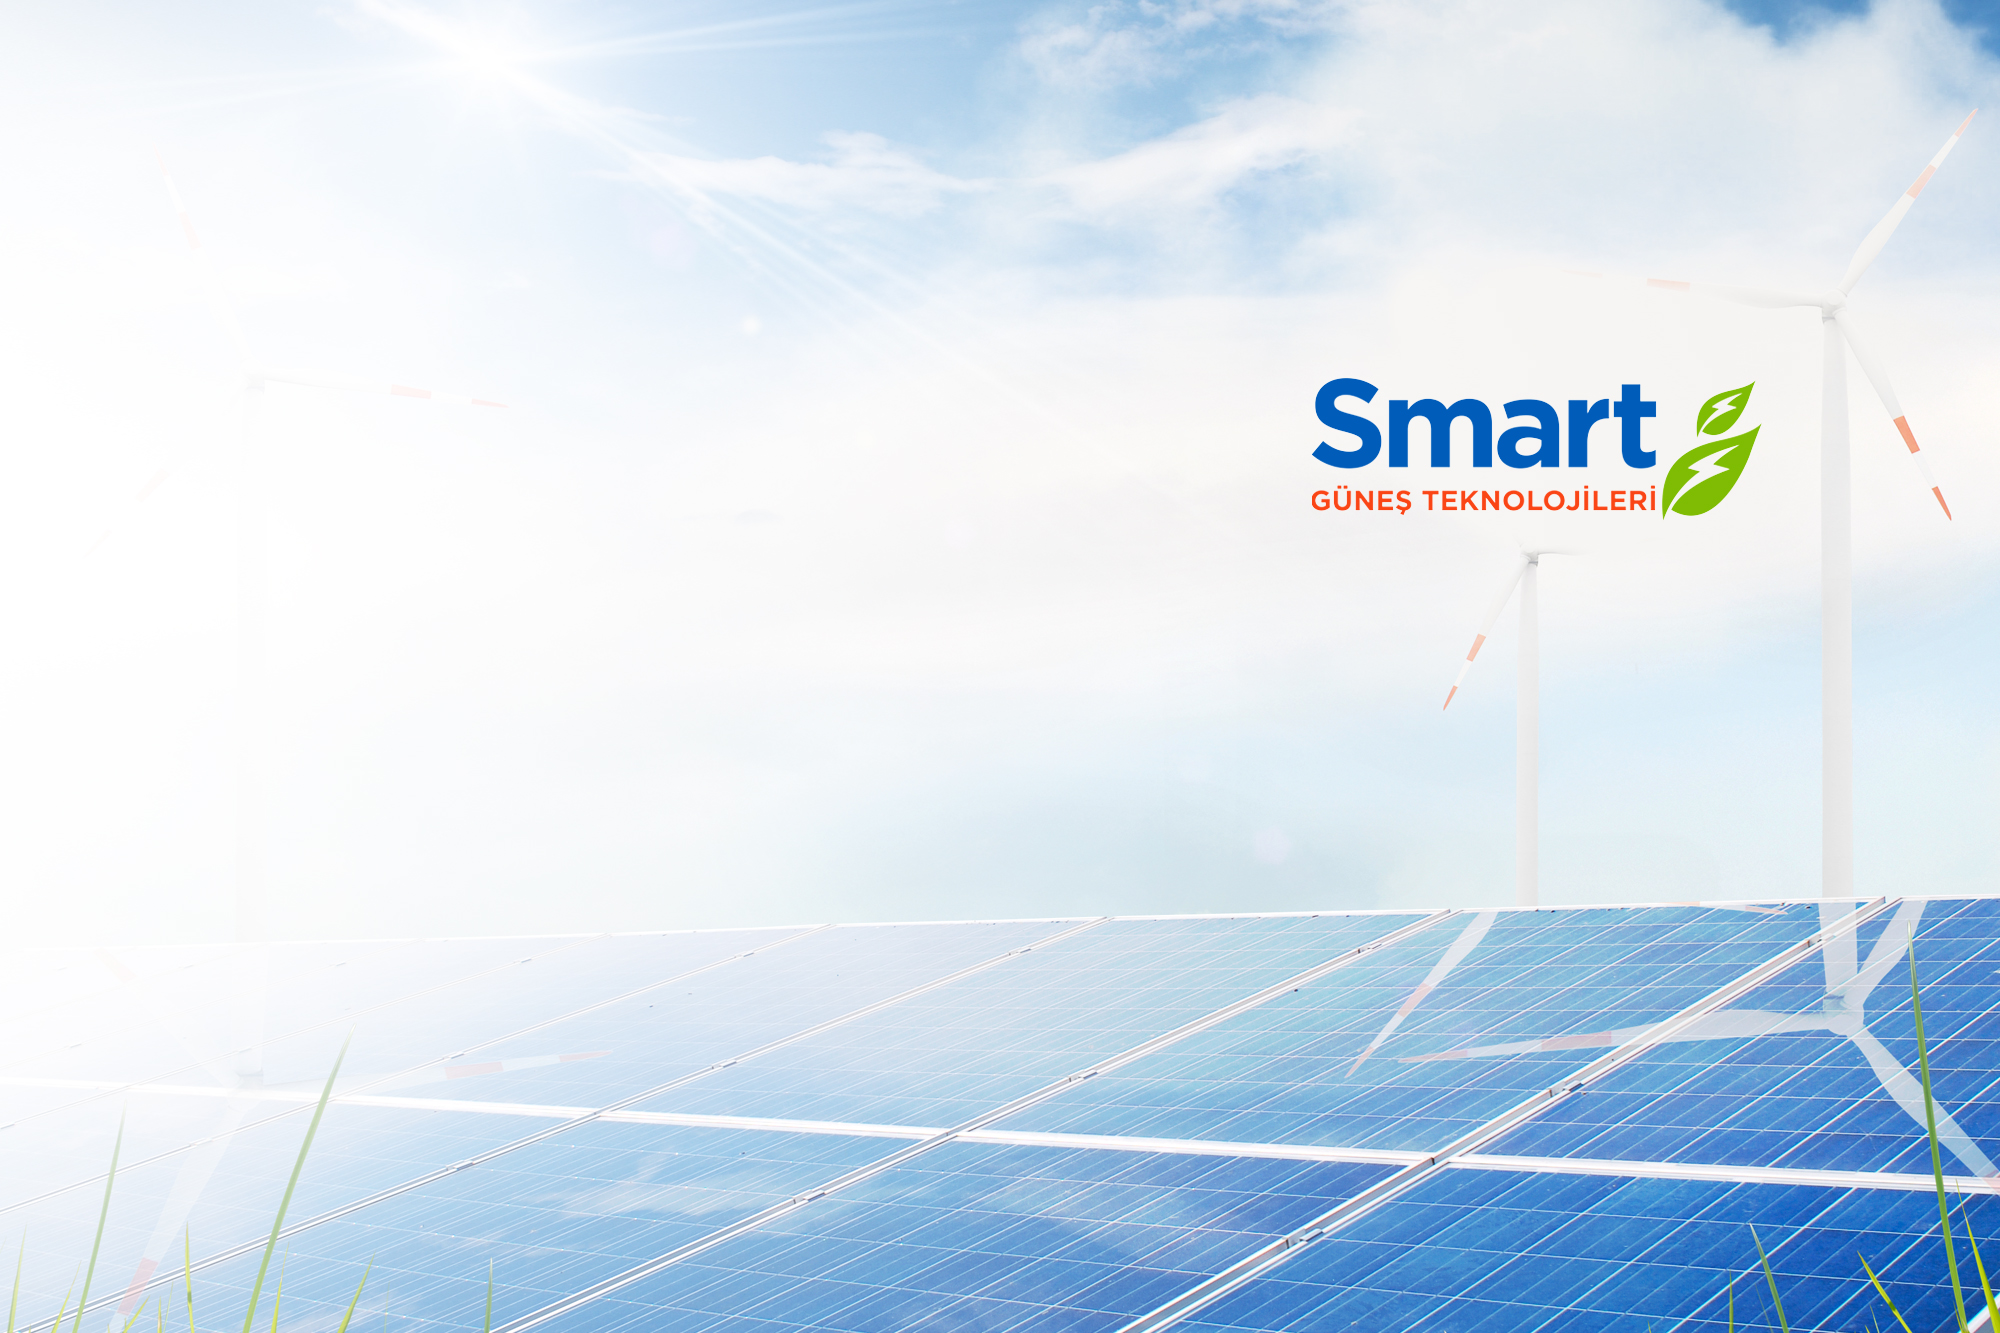 Smart Güneş Teknolojileri, 2023 yılında toplamda 1.2 Milyar TL'lik yatırıma  imza atacak - Paraanaliz